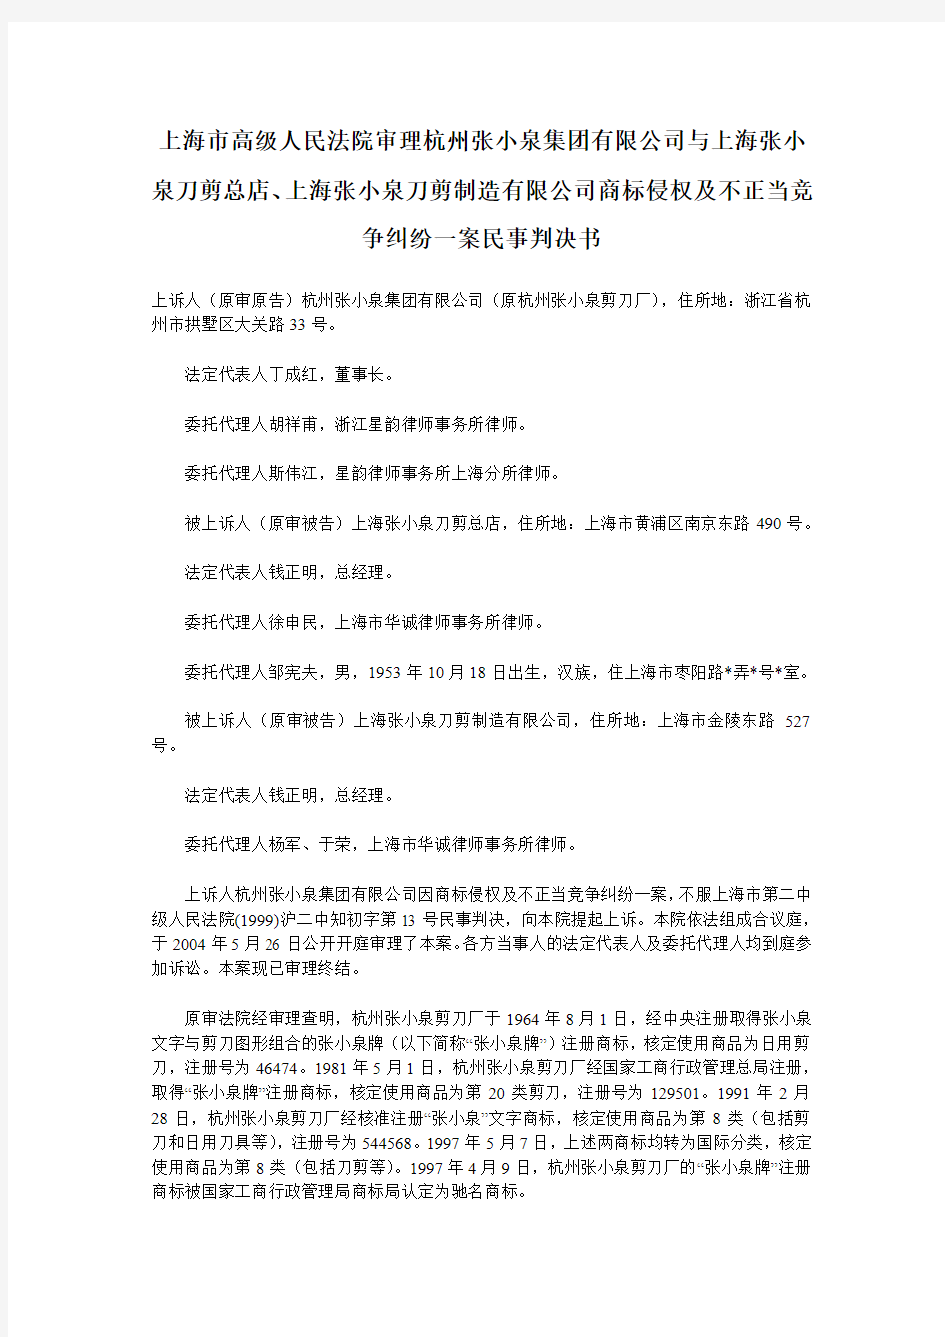 上海市高级人民法院审理杭州张小泉集团有限公司与上海张小泉刀剪总店